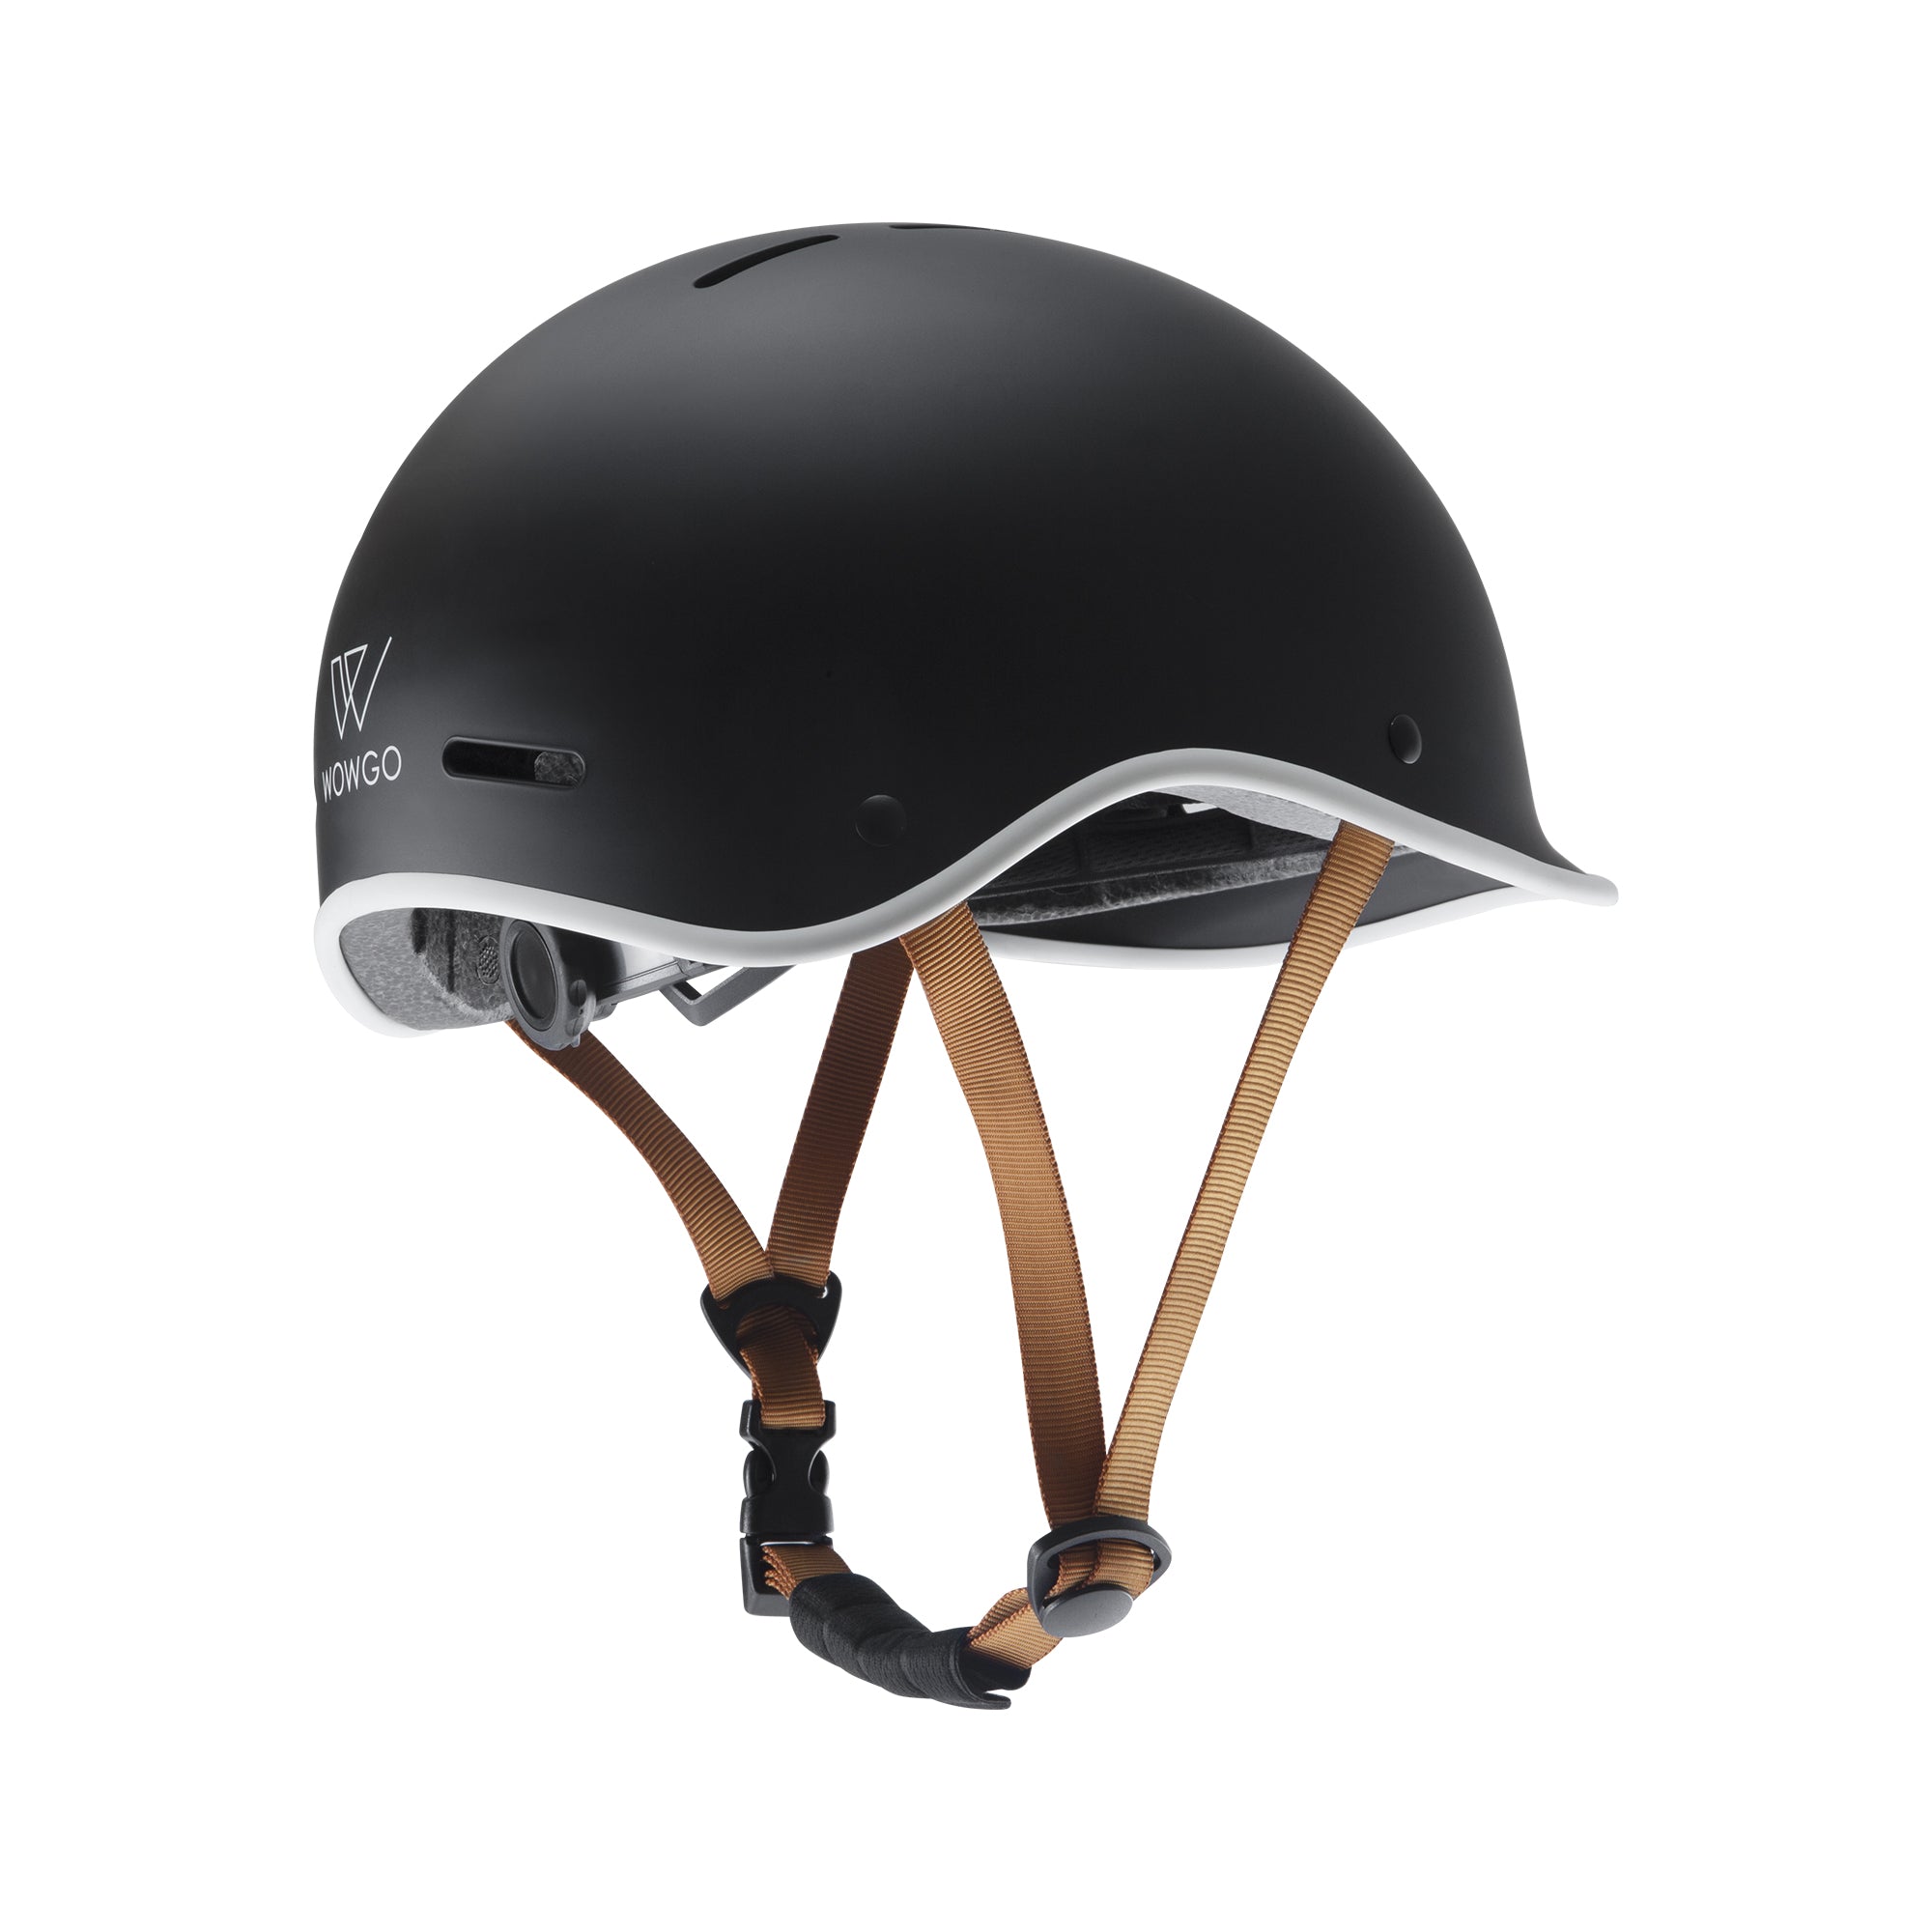 WowGo Helmet - WOWGO BOARD